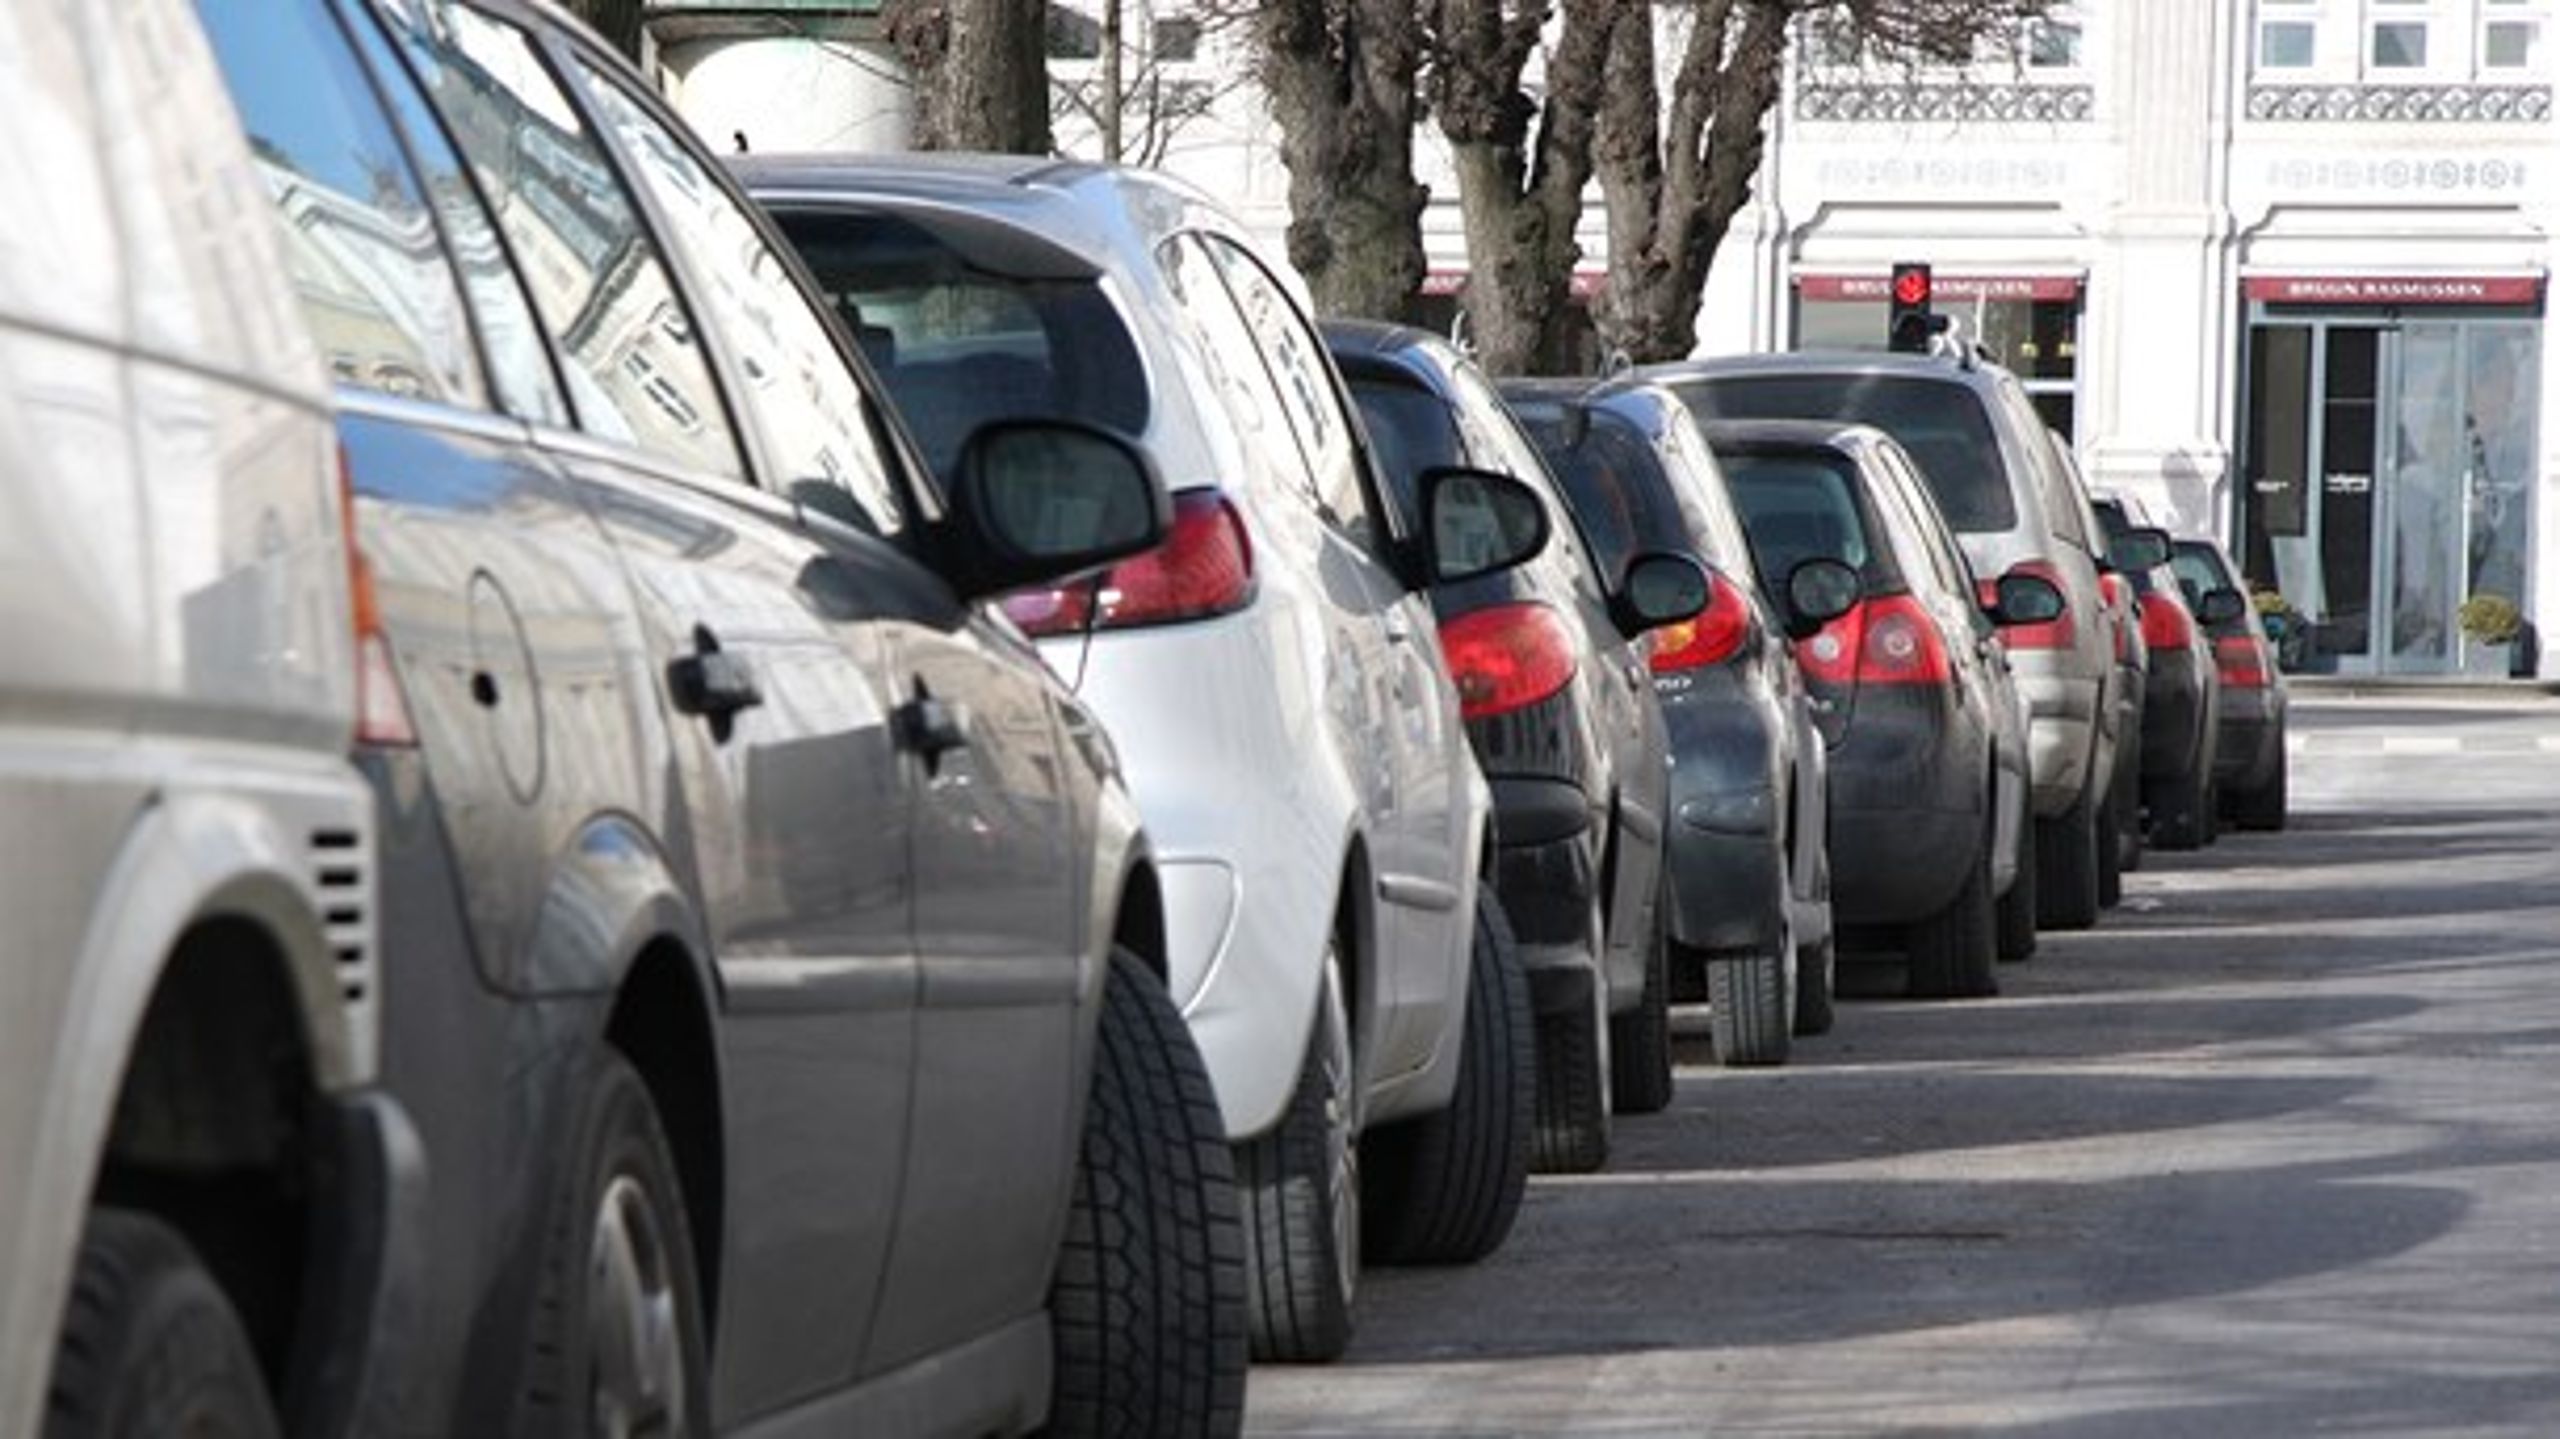 Fremover vil staten snuppe en endnu større del af kommunernes indtægter fra parkering.